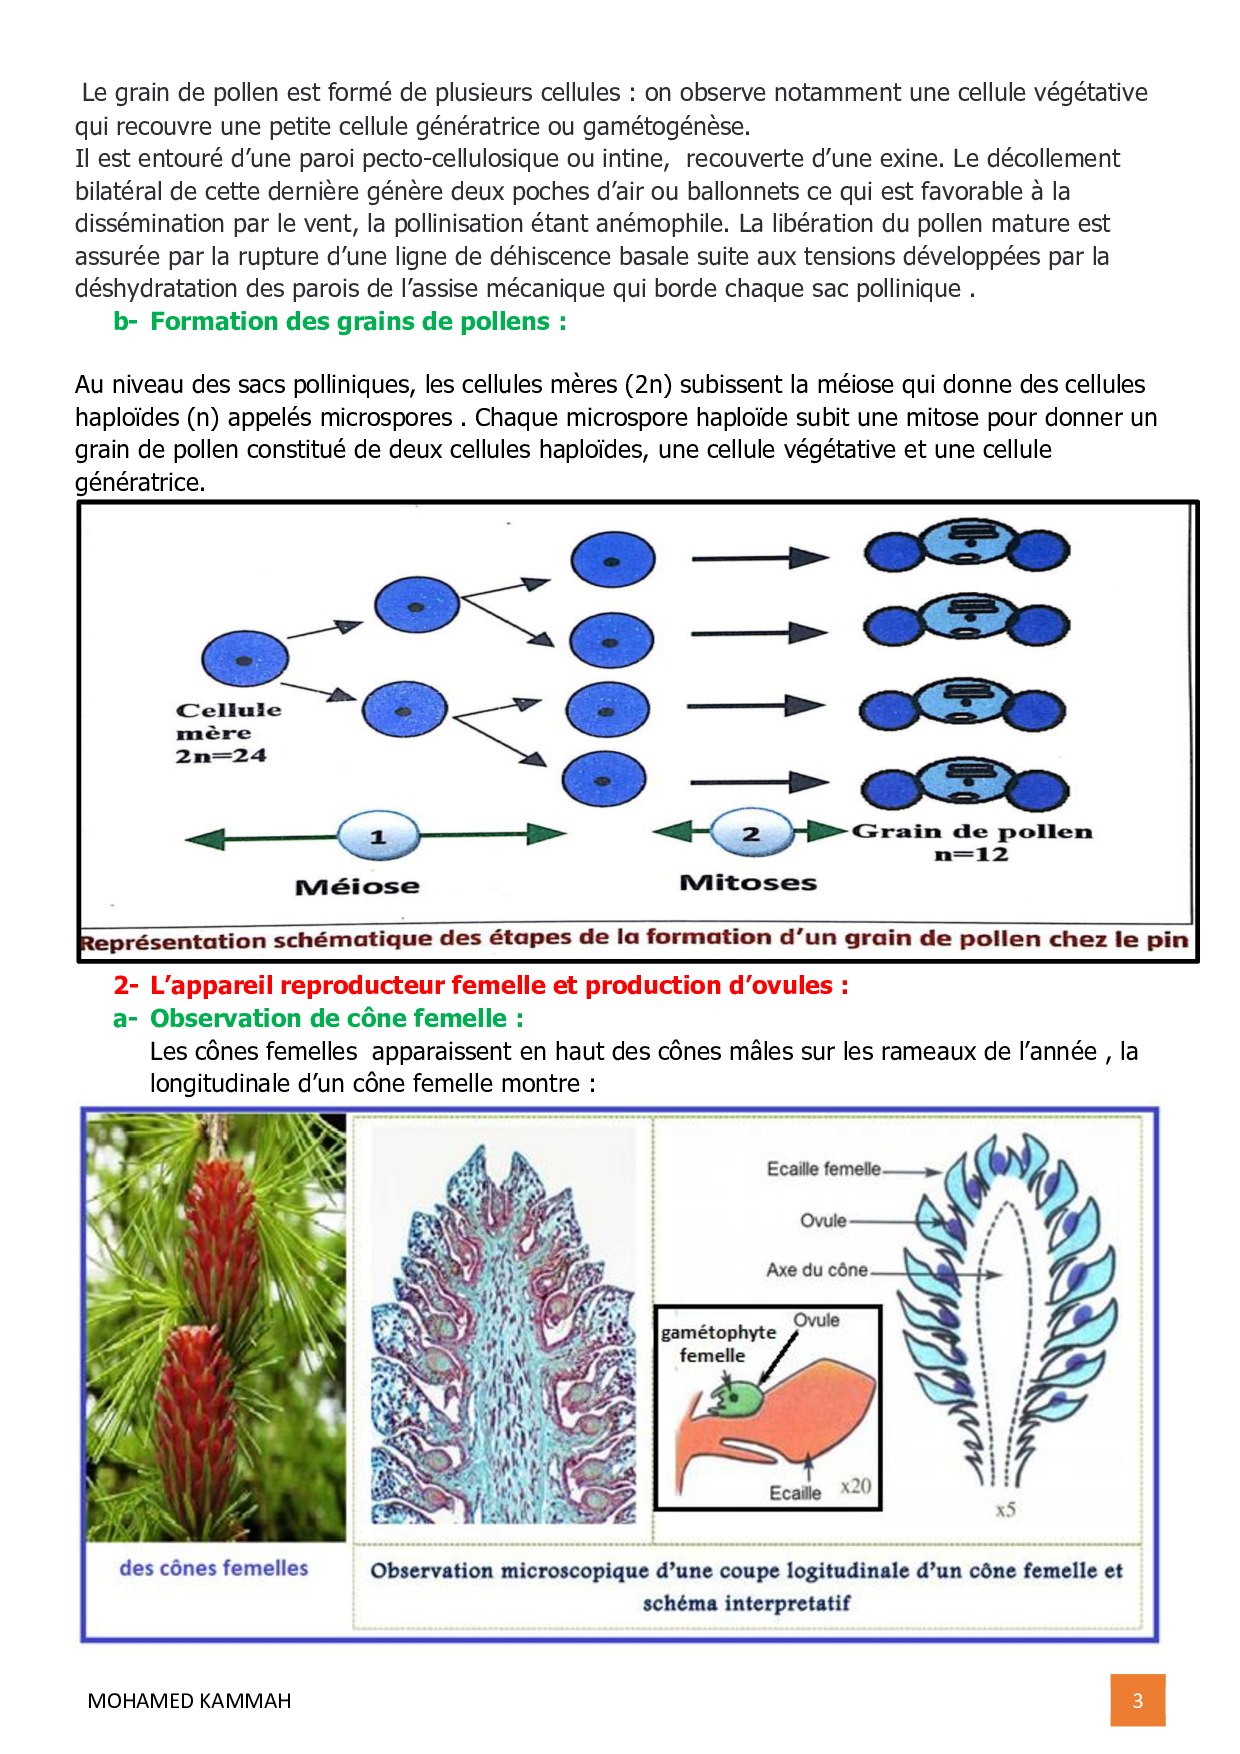 La reproduction sexuée chez les Pinophytes - To Take Nature - La Nature  sous toutes ses formes